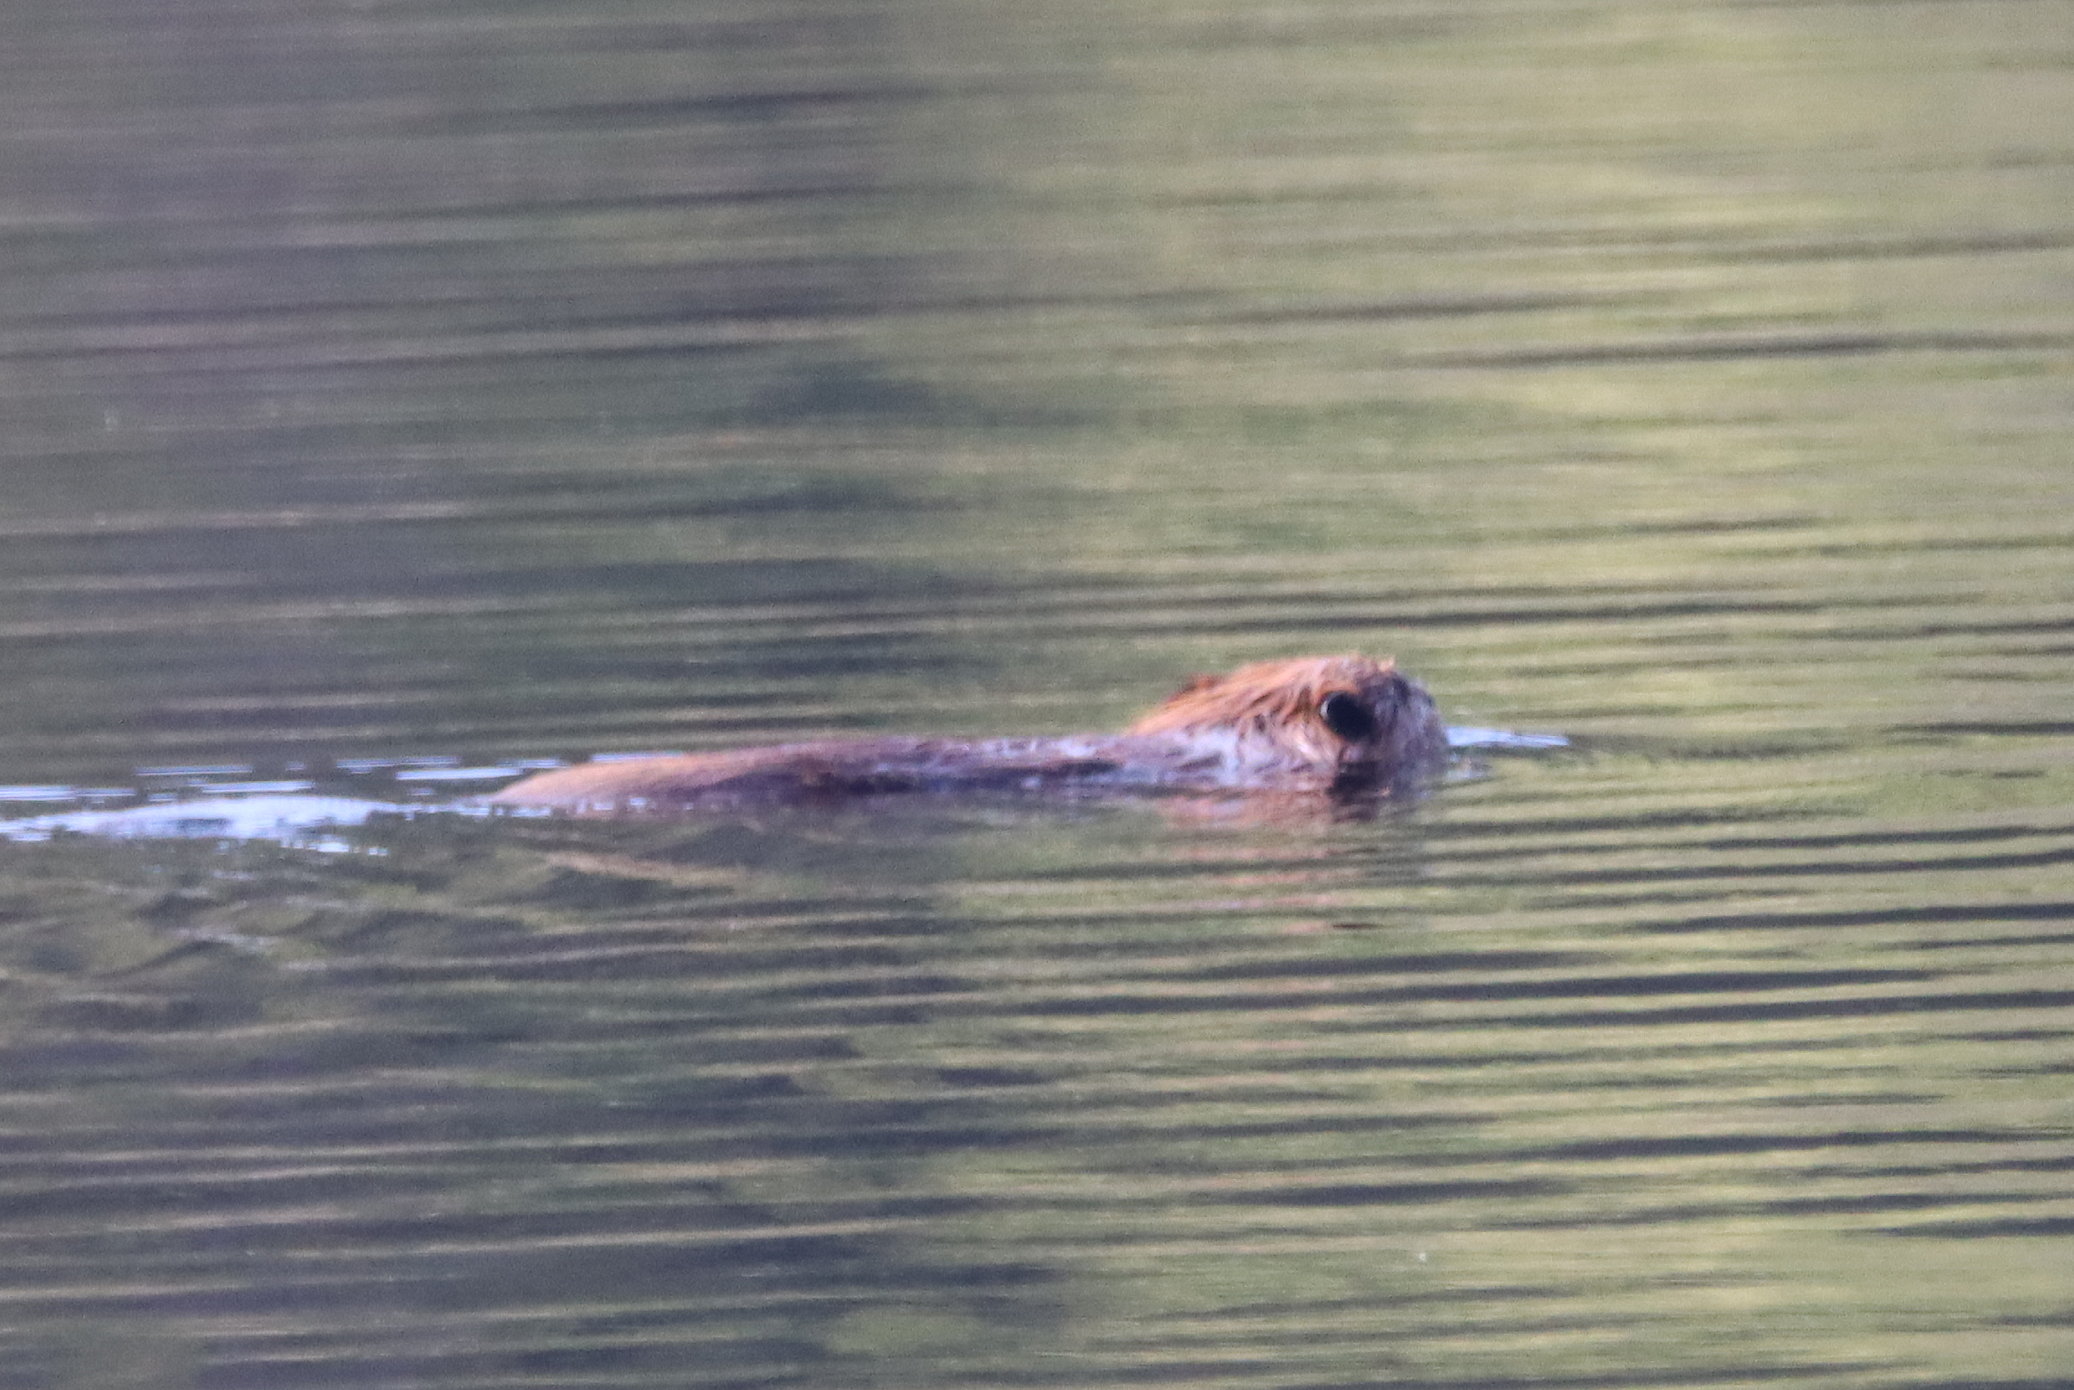 Ein Biber schwimmt mit erhobenem Kopf durch den See